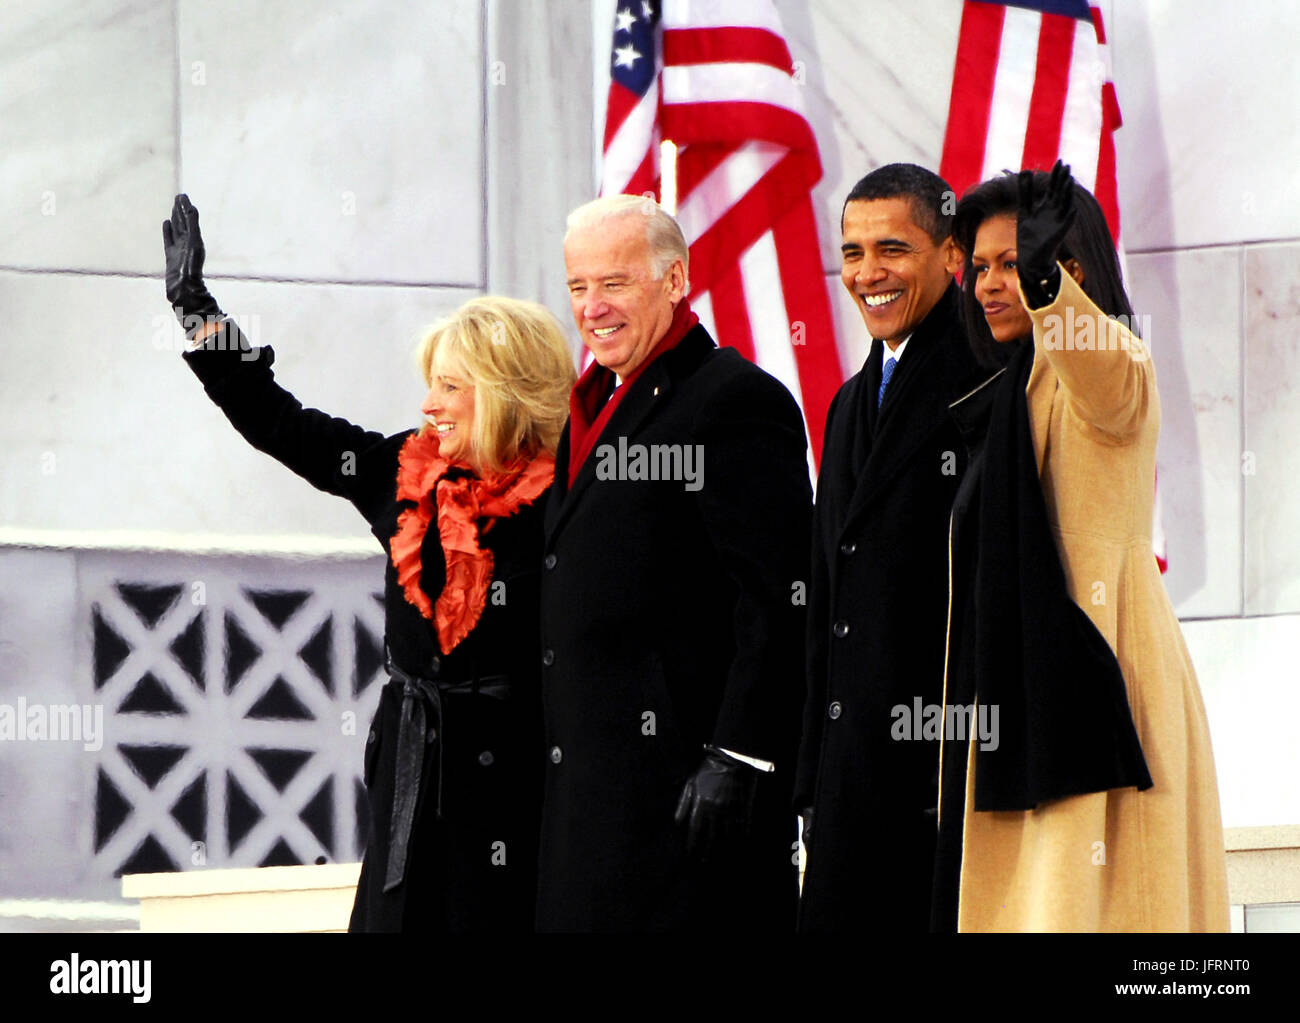 Jill Biden, Vize-Präsident Joe Biden, gewählter Präsident Barack Obama und Michelle Obama Welle der Menge versammelten sich am Lincoln Memorial an der National Mall in Washington, D.C., 18. Januar 2009, während der konstituierenden Eröffnungsfeier. Stockfoto